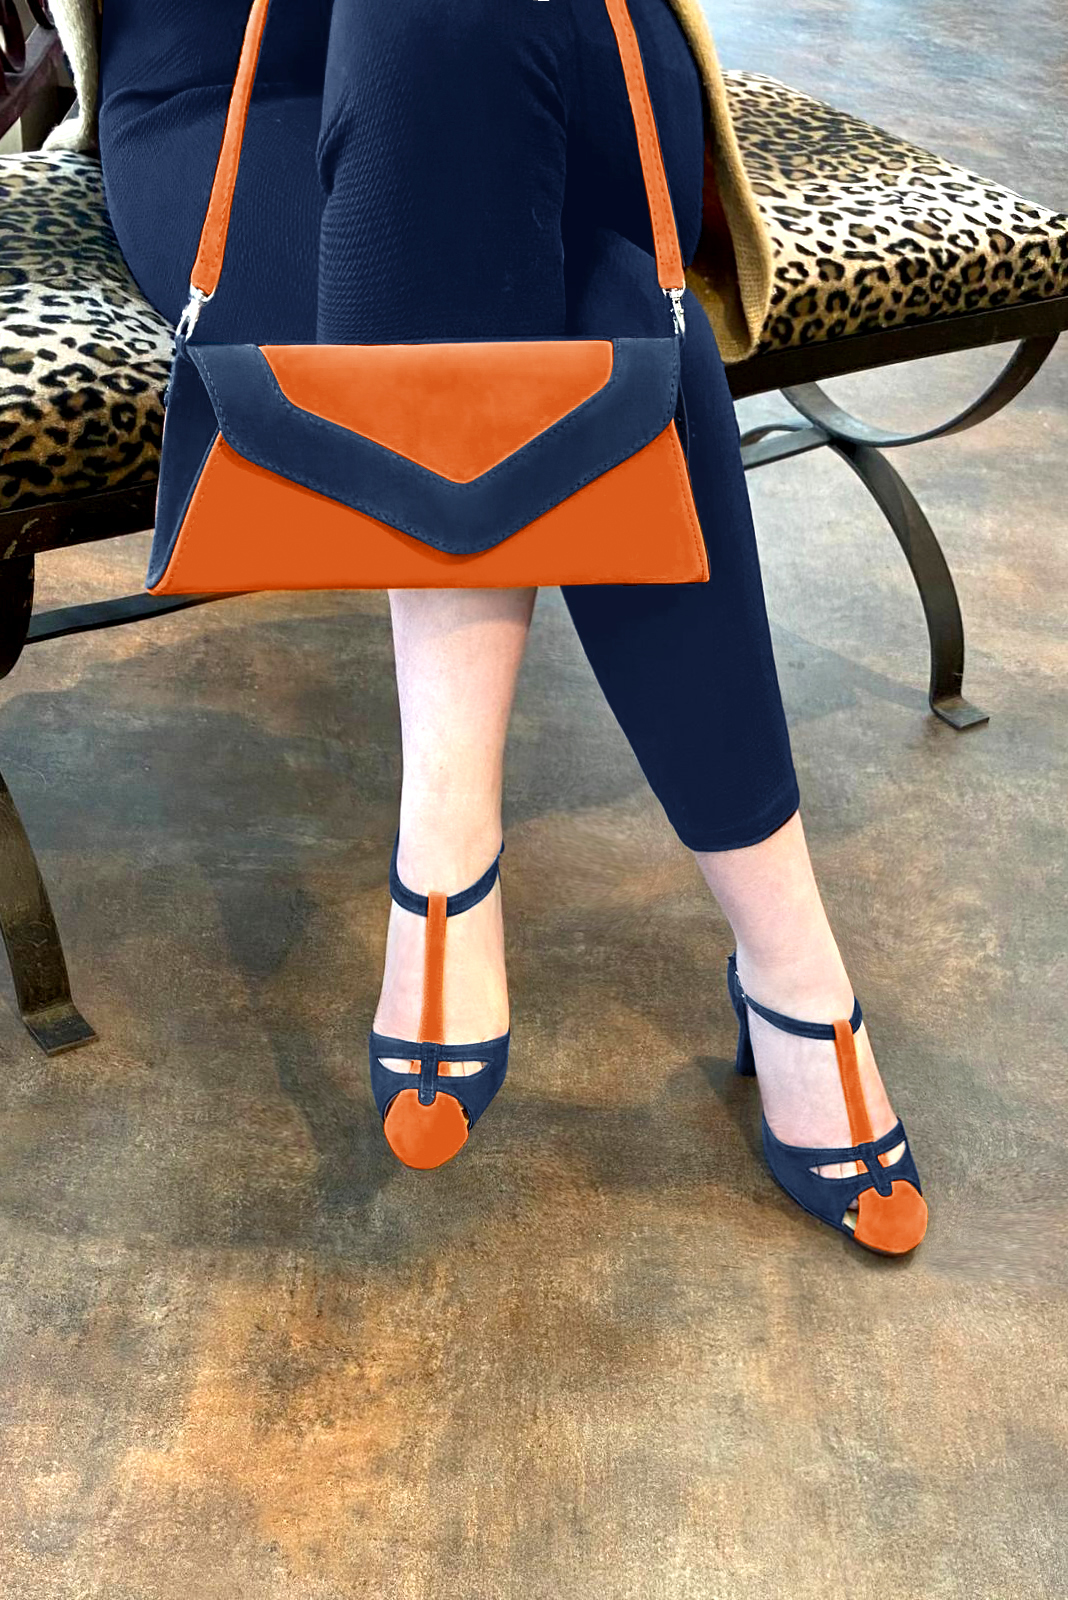 Chaussure femme à brides : Salomé côtés ouverts couleur orange clémentine et bleu marine. Bout rond. Talon haut trotteur. Vue porté - Florence KOOIJMAN